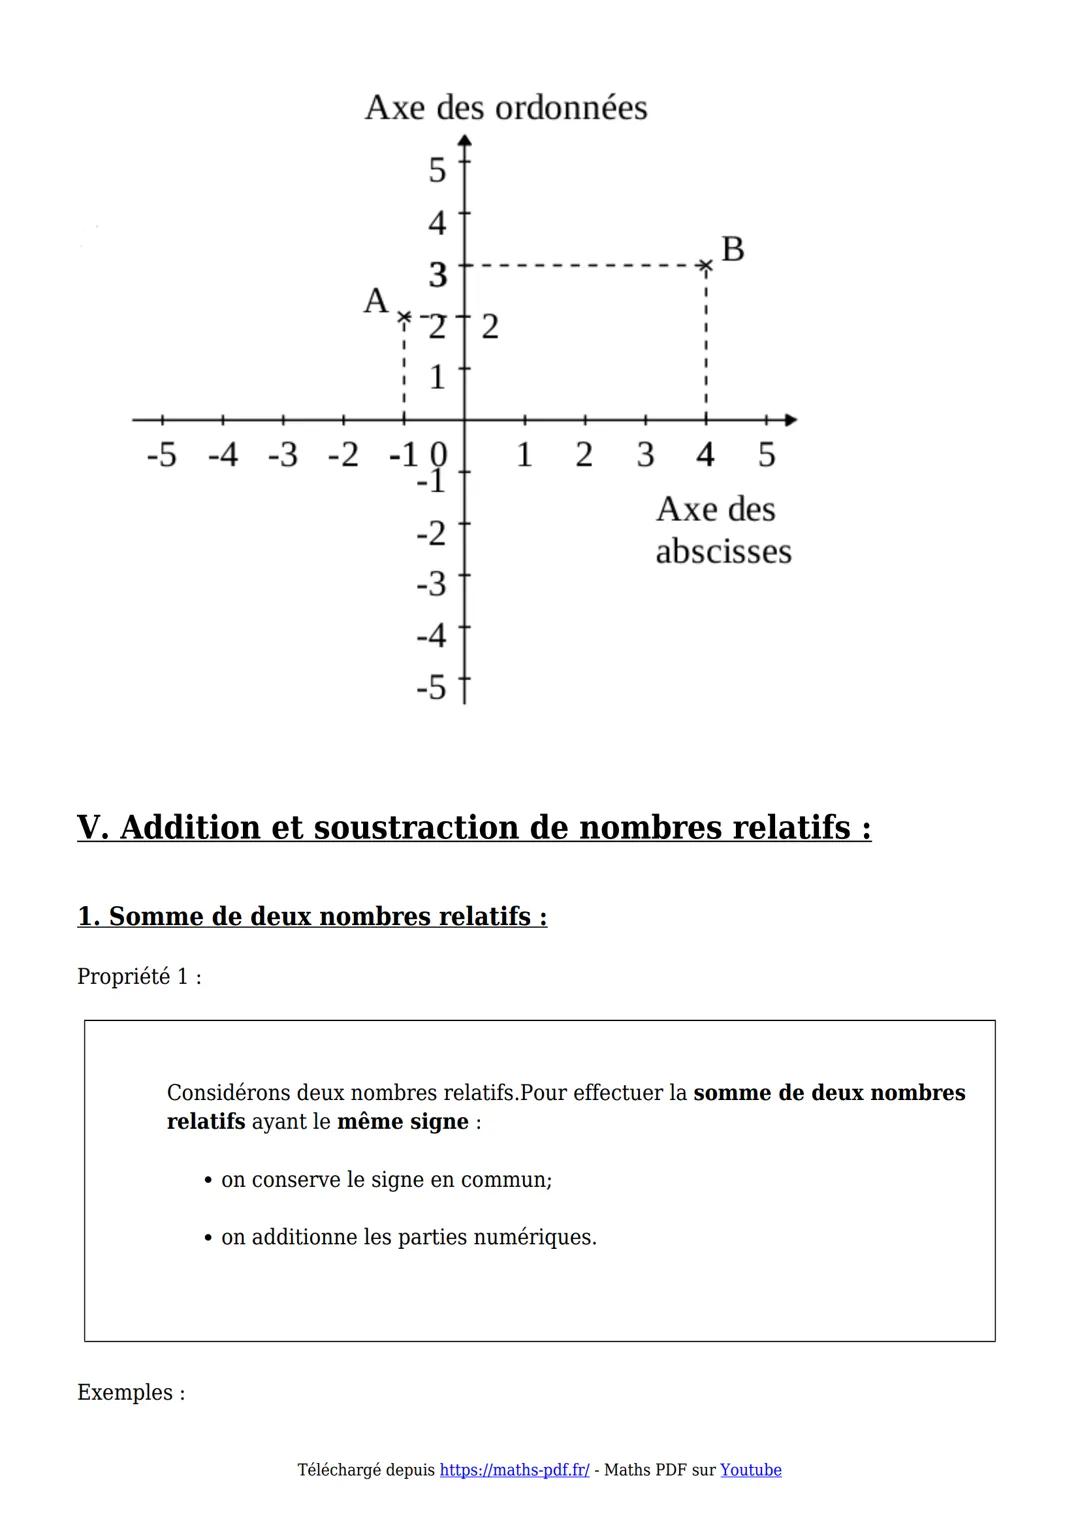 Cours 5ème
Maths-PDF
Créer selecharger imprimeren PDF
I Introduction aux nombres relatifs :
1.Activité d'introduction :
30
20
10
2016 目
10
2